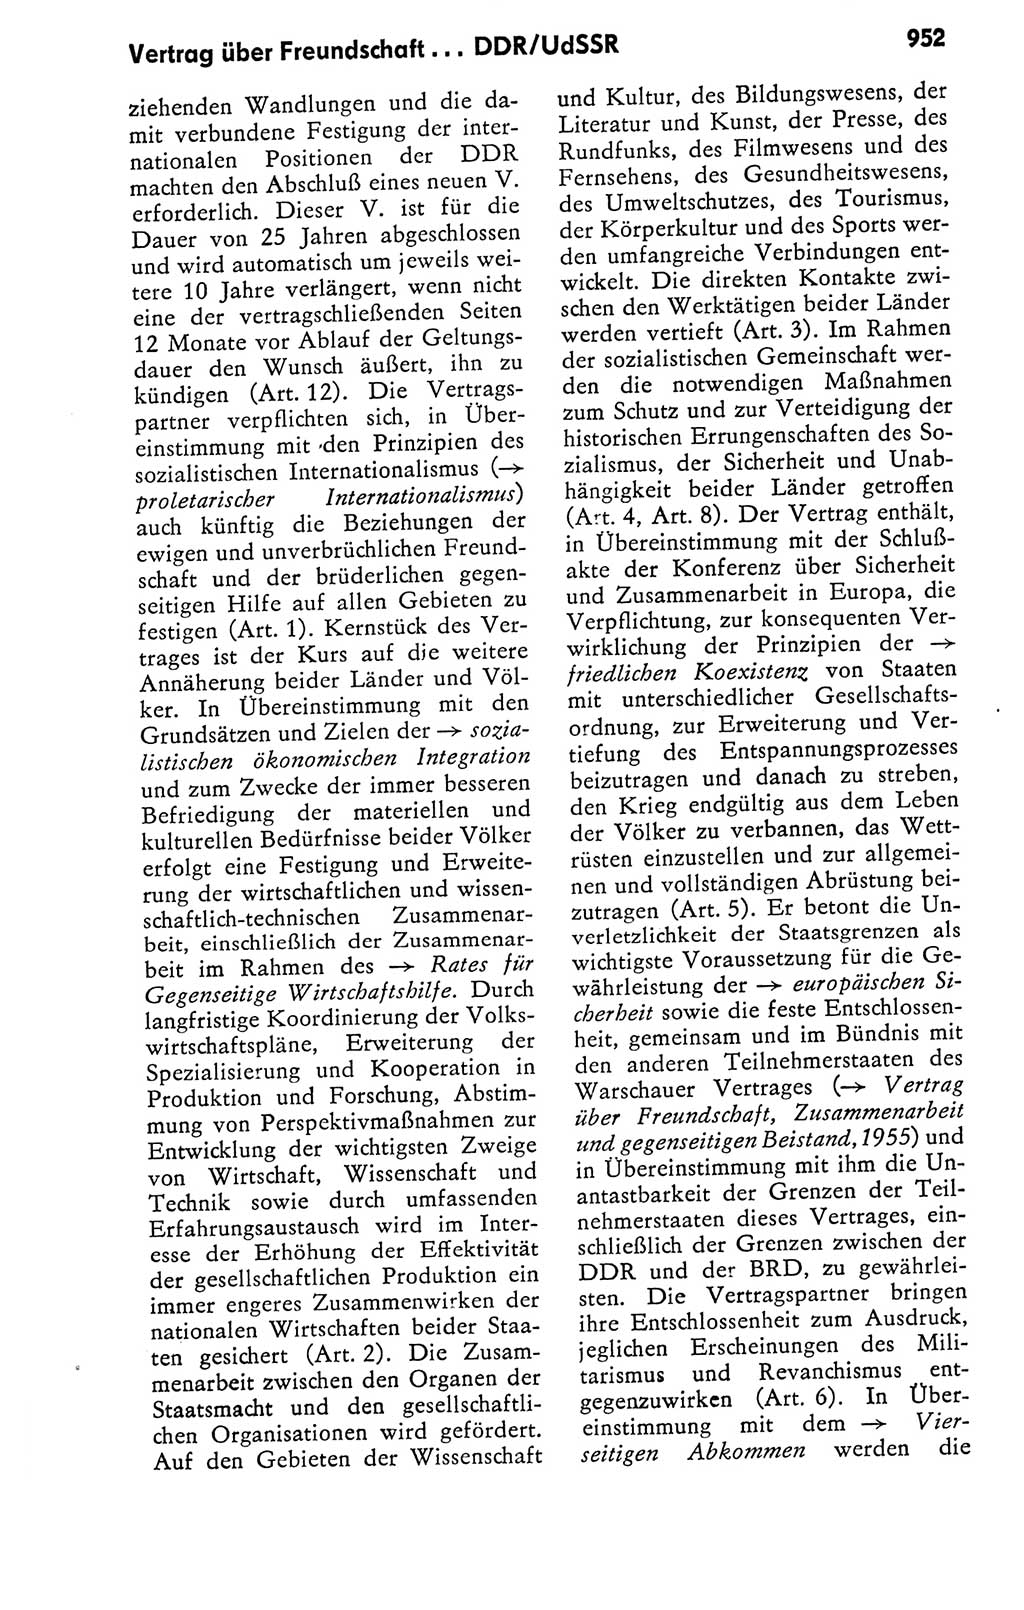 Kleines politisches Wörterbuch [Deutsche Demokratische Republik (DDR)] 1978, Seite 952 (Kl. pol. Wb. DDR 1978, S. 952)